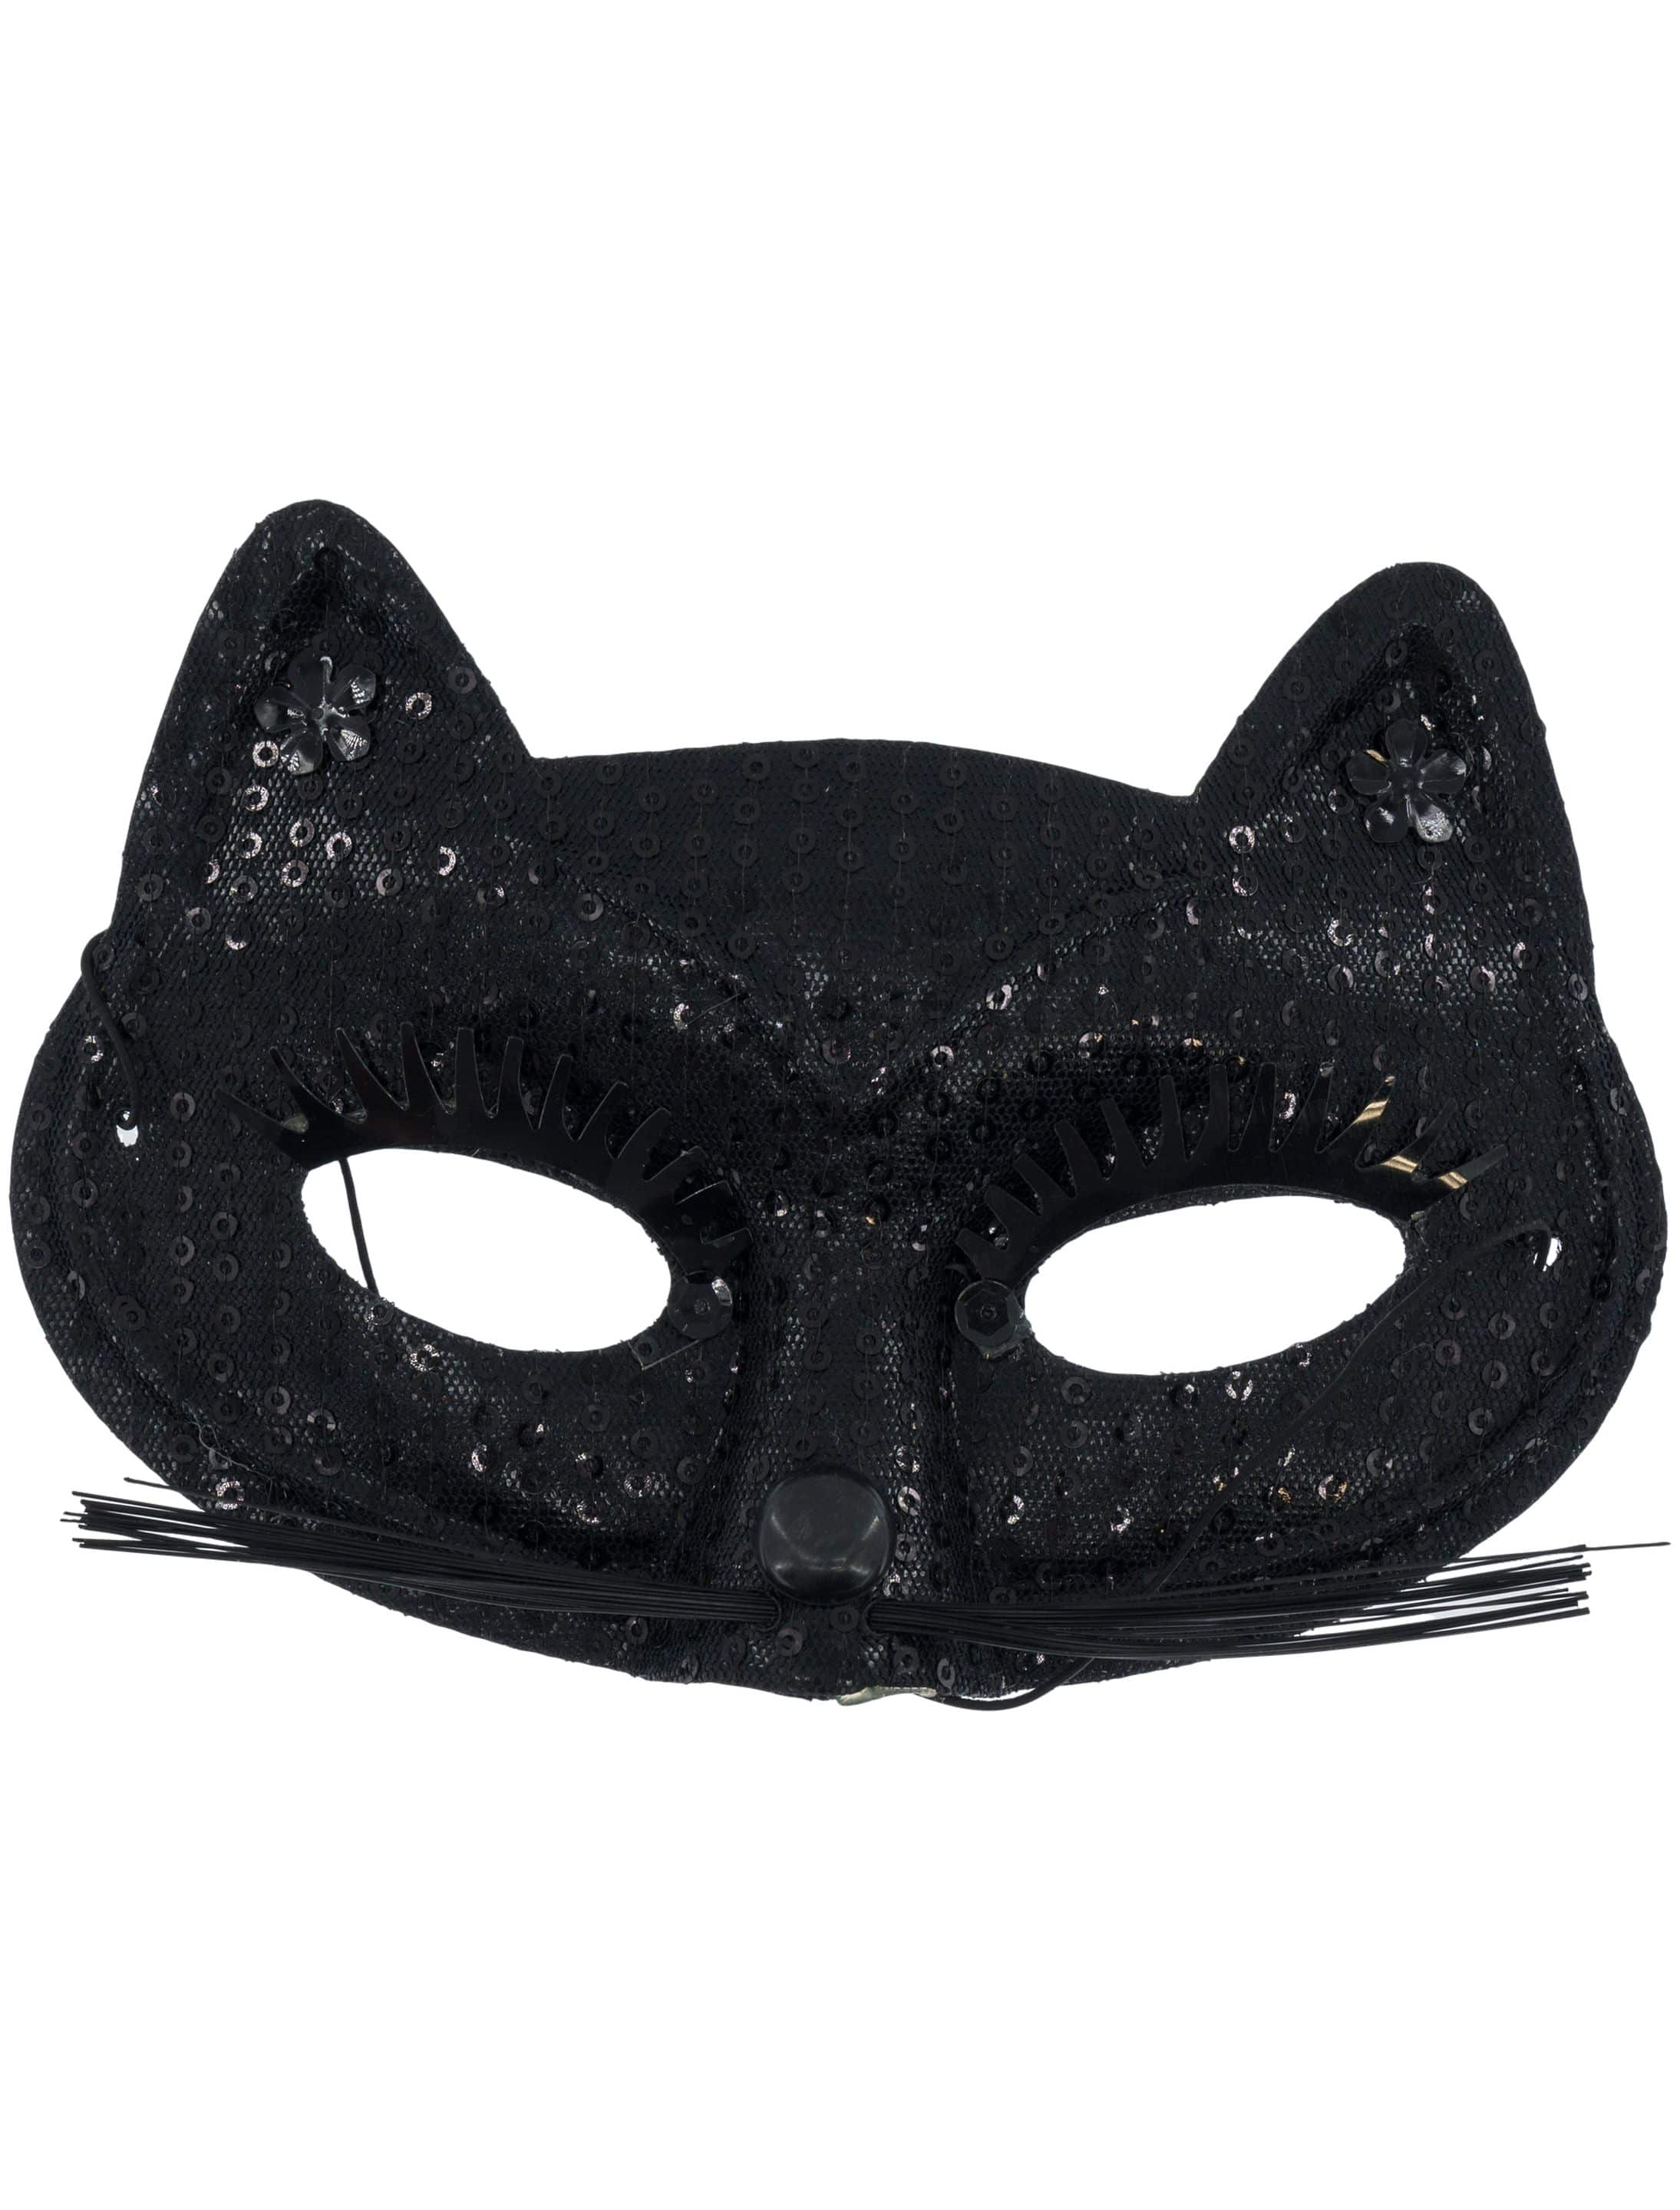 Katzenmaske mit Pailetten schwarz